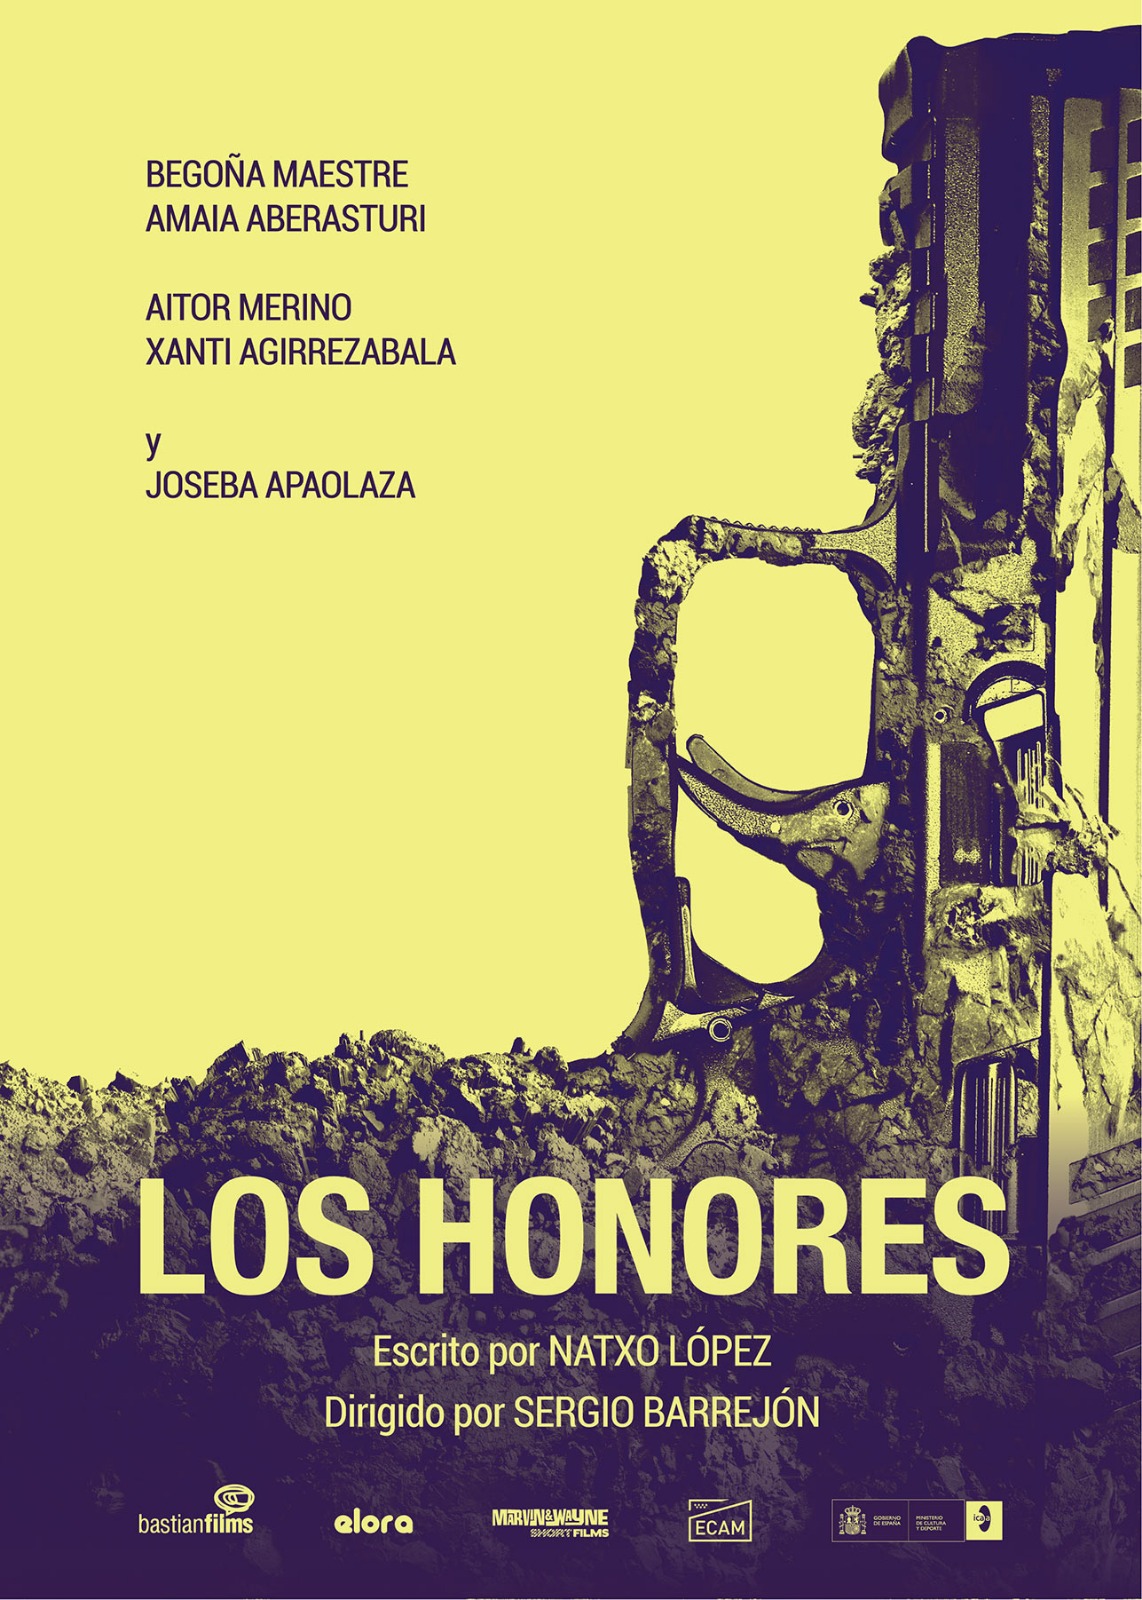 Los honores (2020)